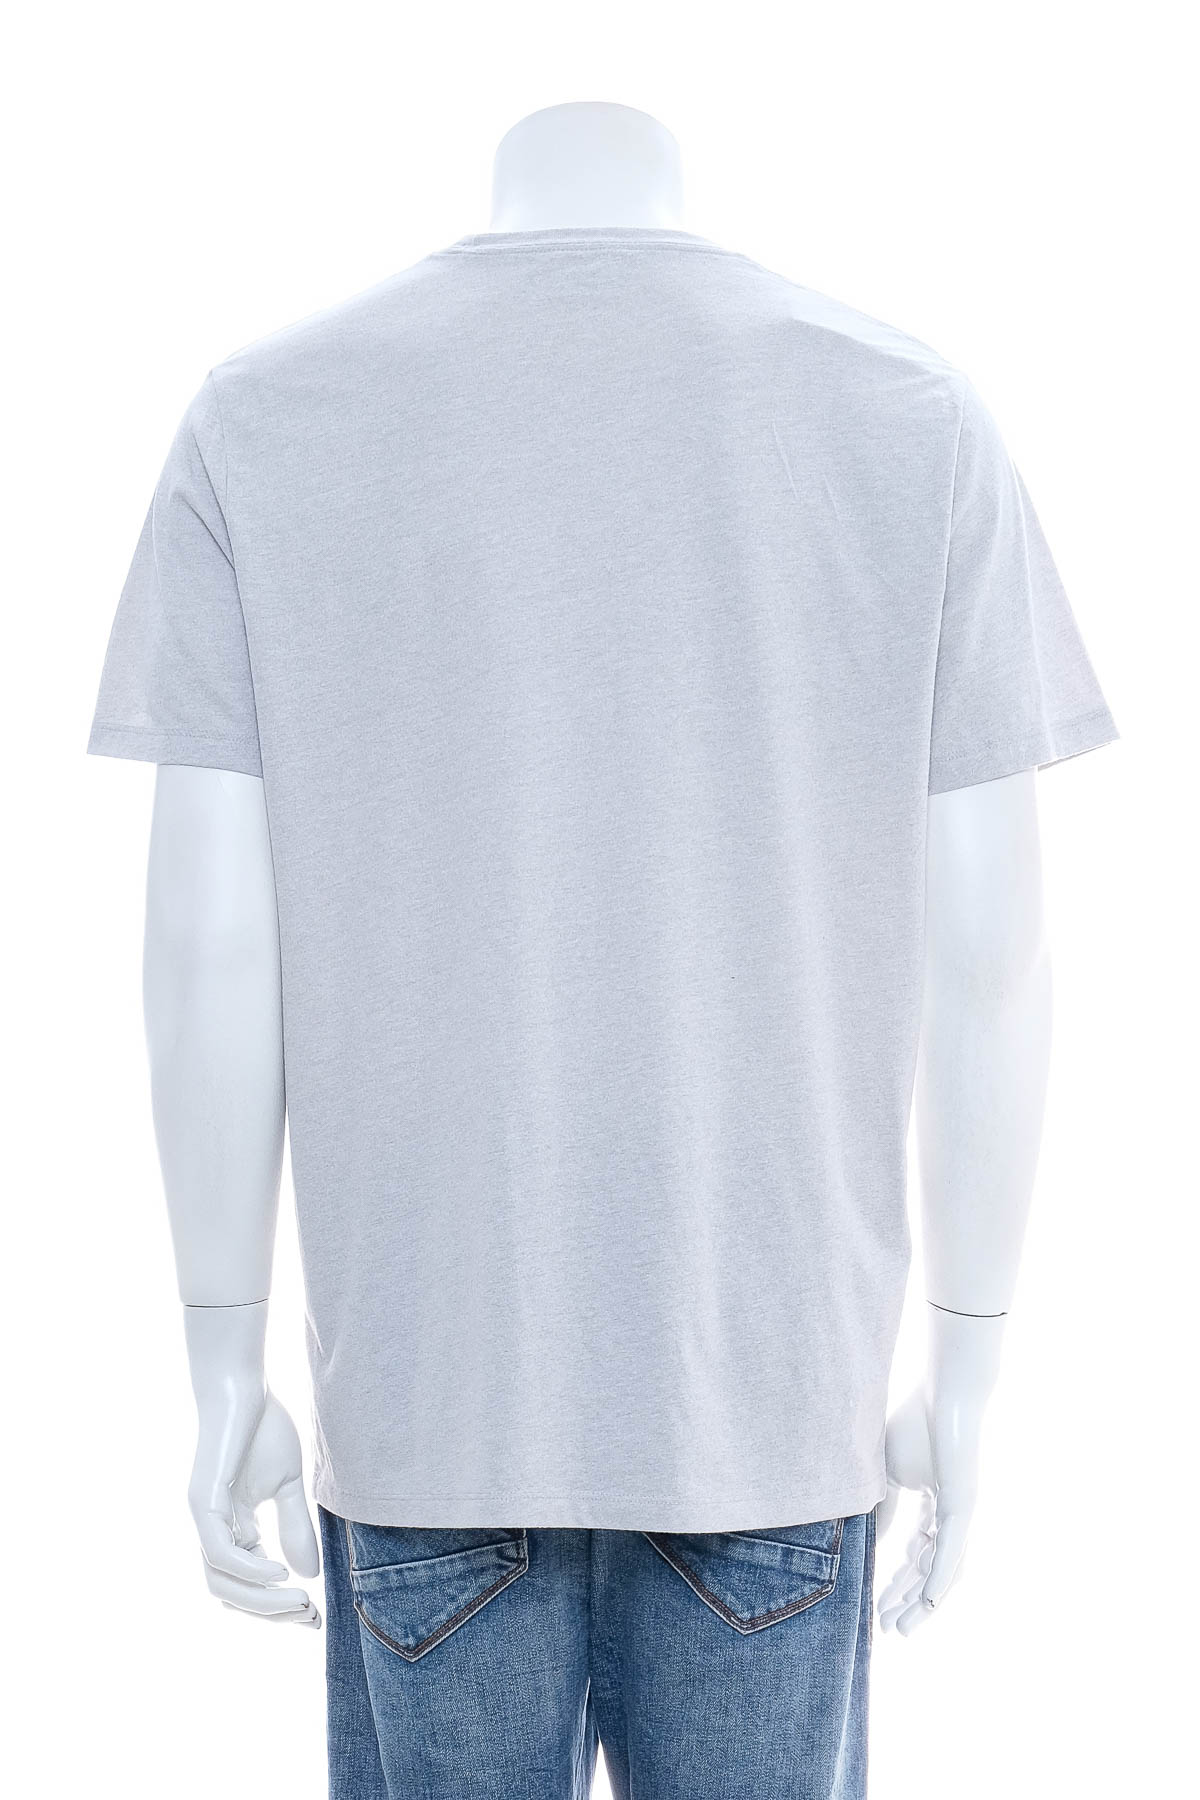 Αντρική μπλούζα - Abercrombie & Fitch - 1